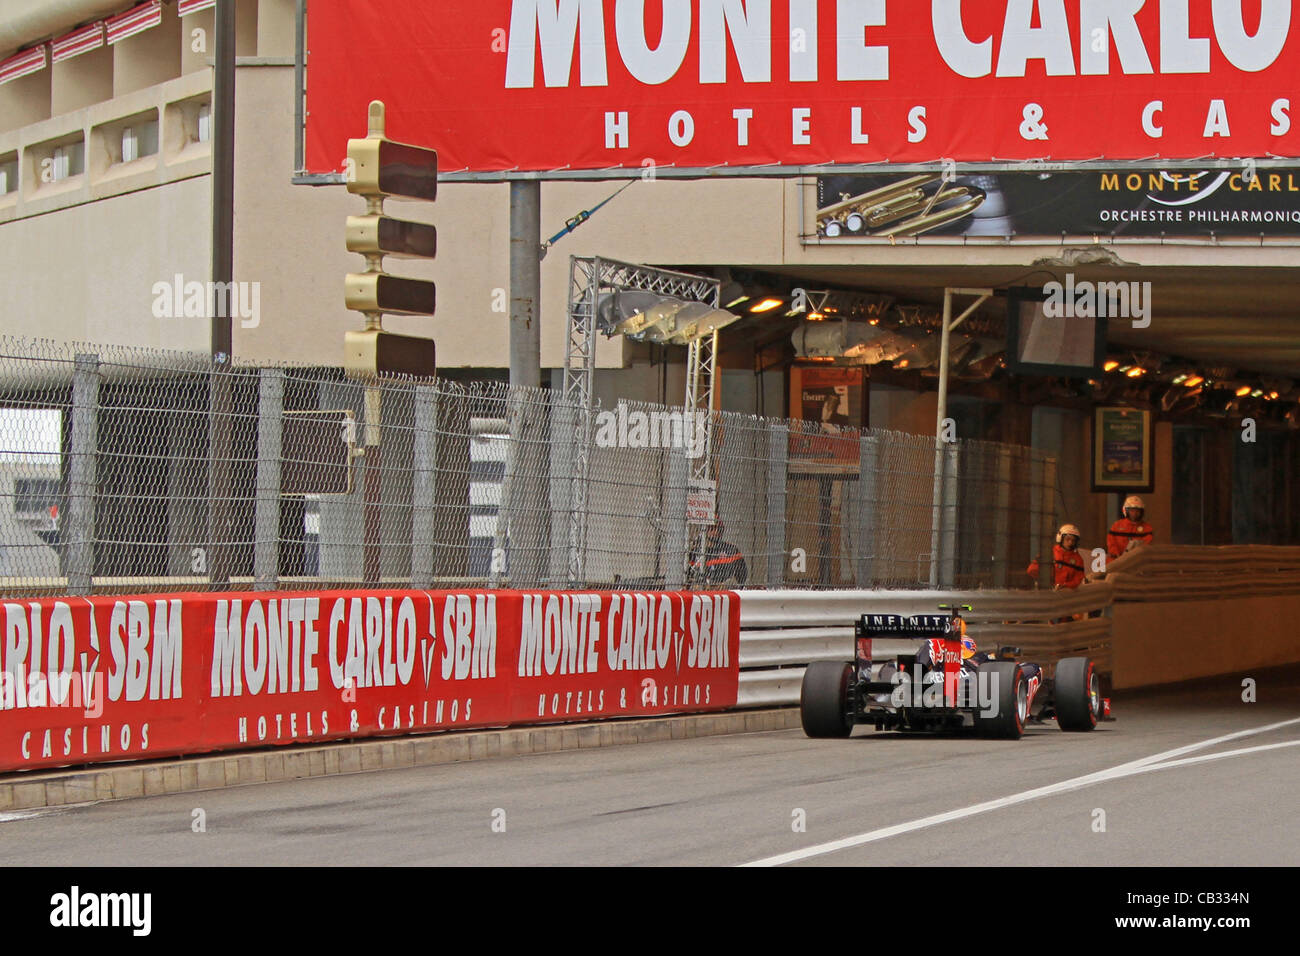 27.05.2012. Monaco Monte Carlo, F1 Grand Prix Mark Webber - Sieger des Monaco Grand während des Rennens Stockfoto